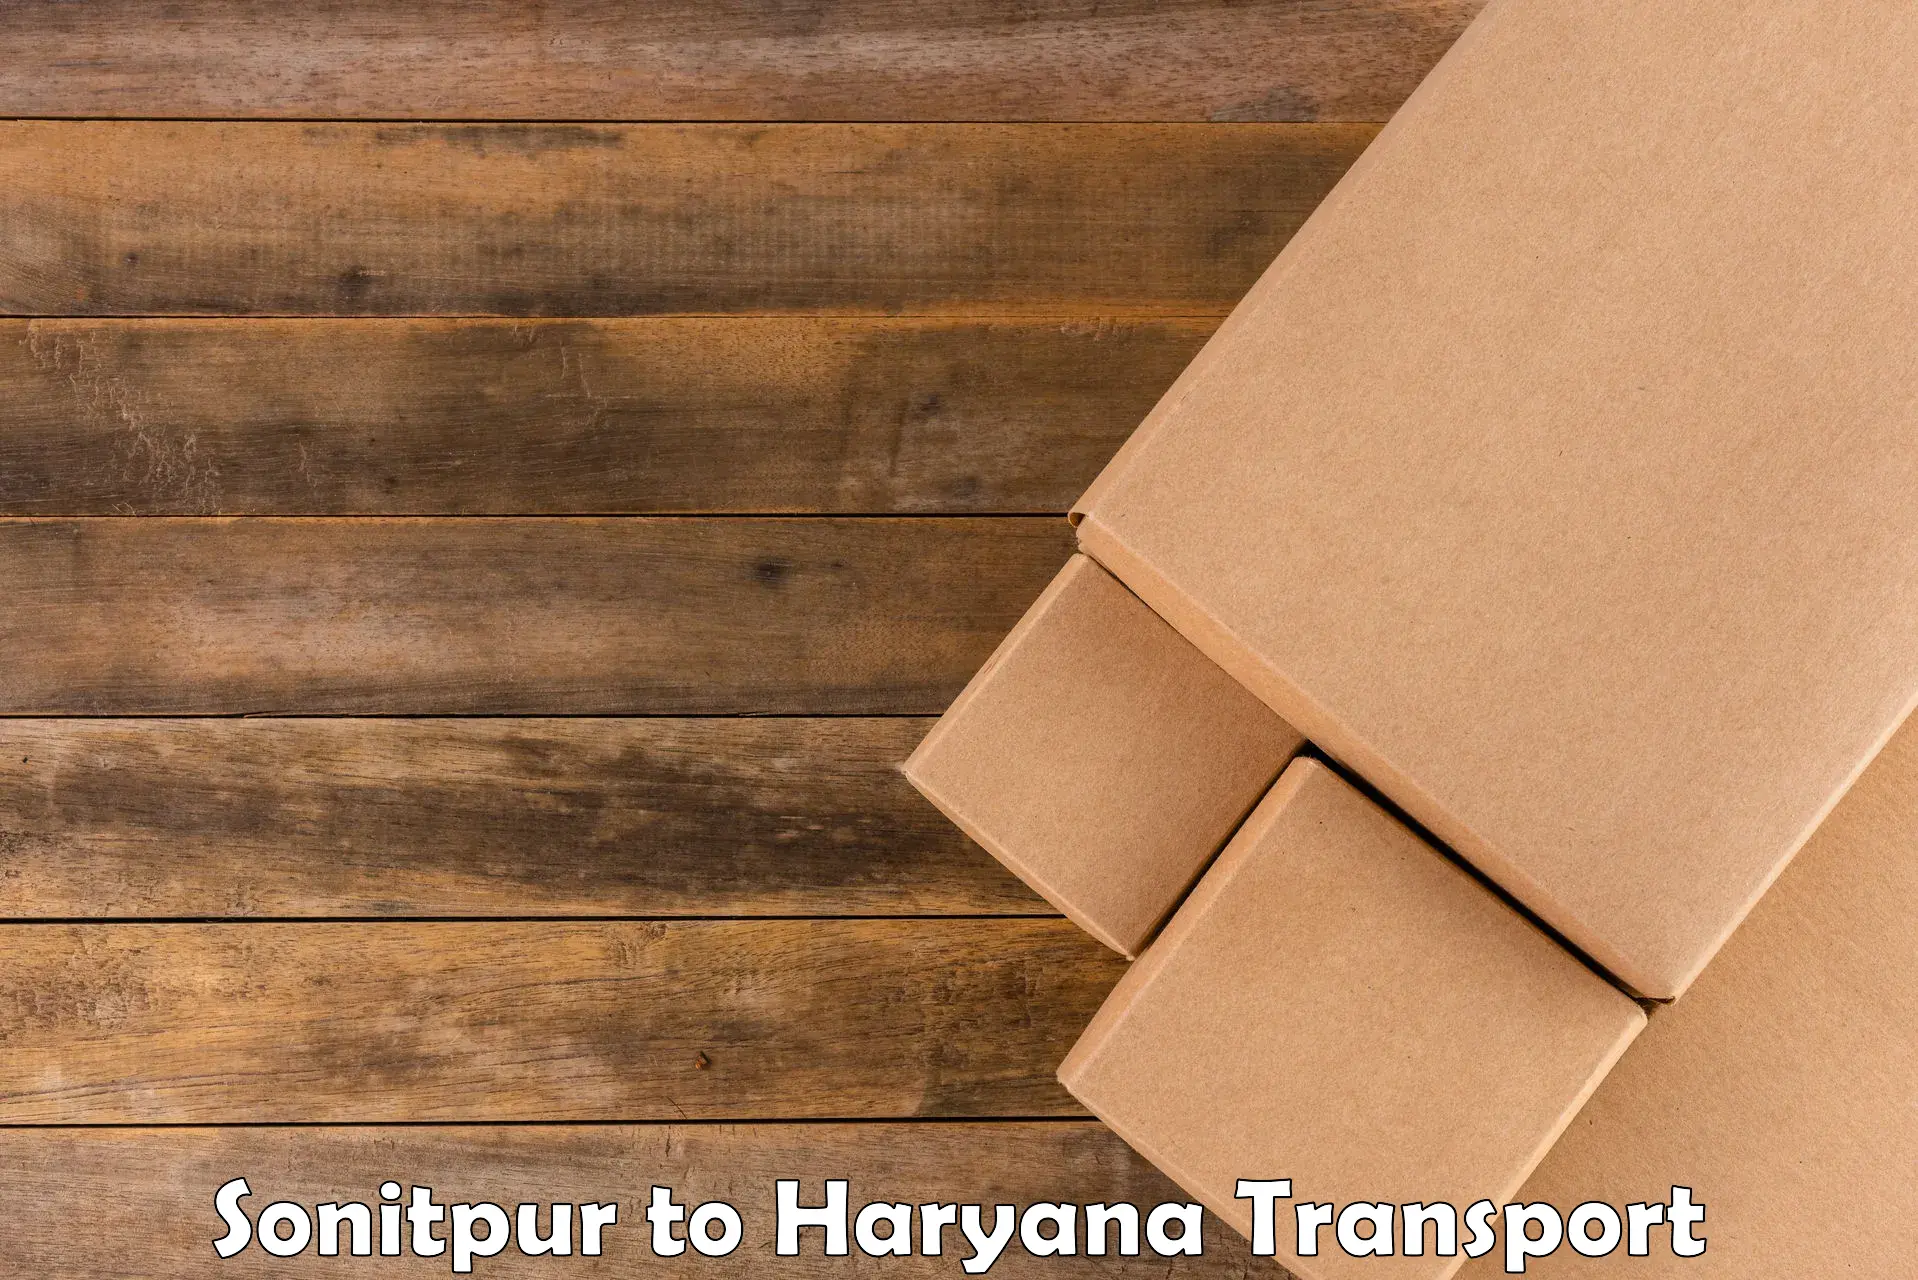 Door to door transport services in Sonitpur to Bilaspur Haryana